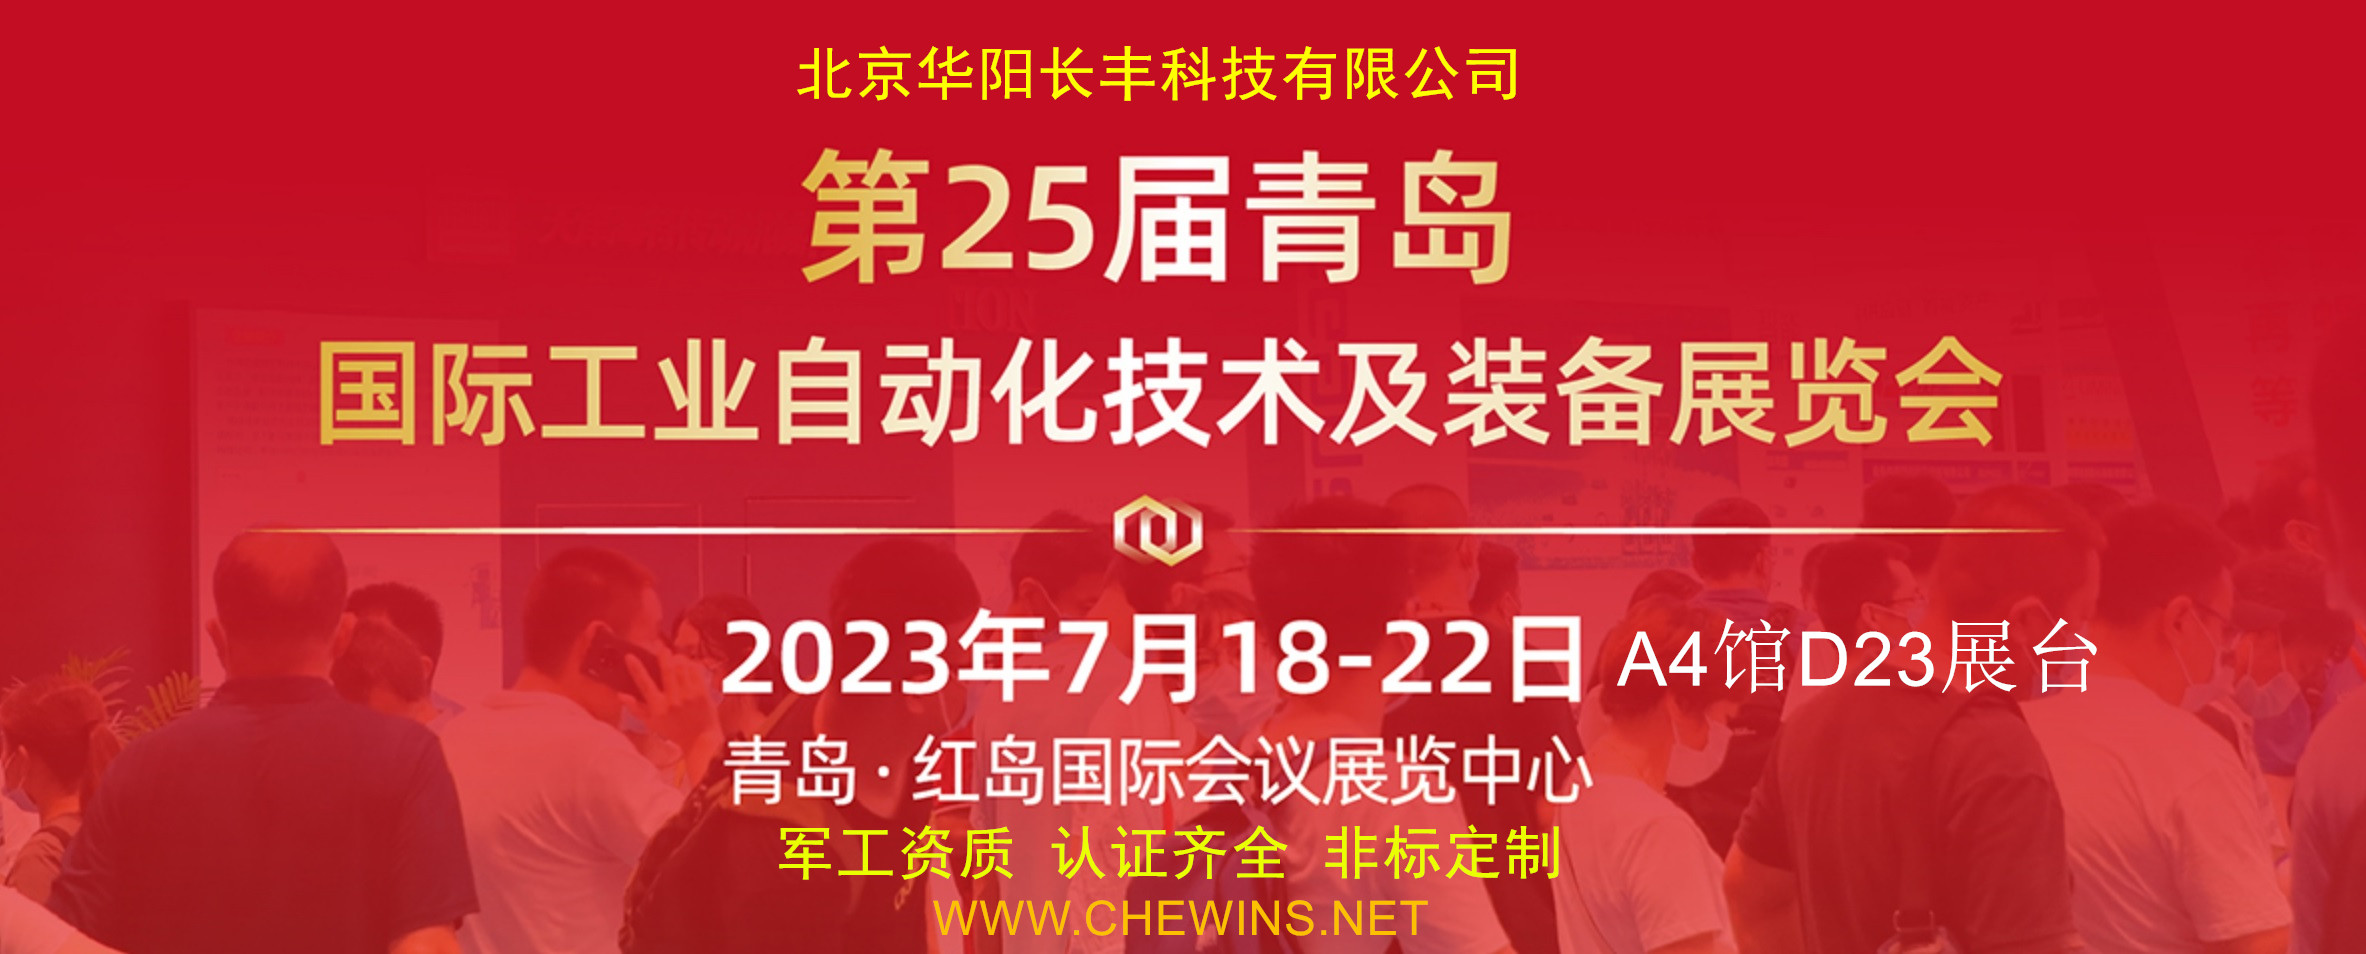 第23届中国青岛国际工业自动化技术及装备展览会